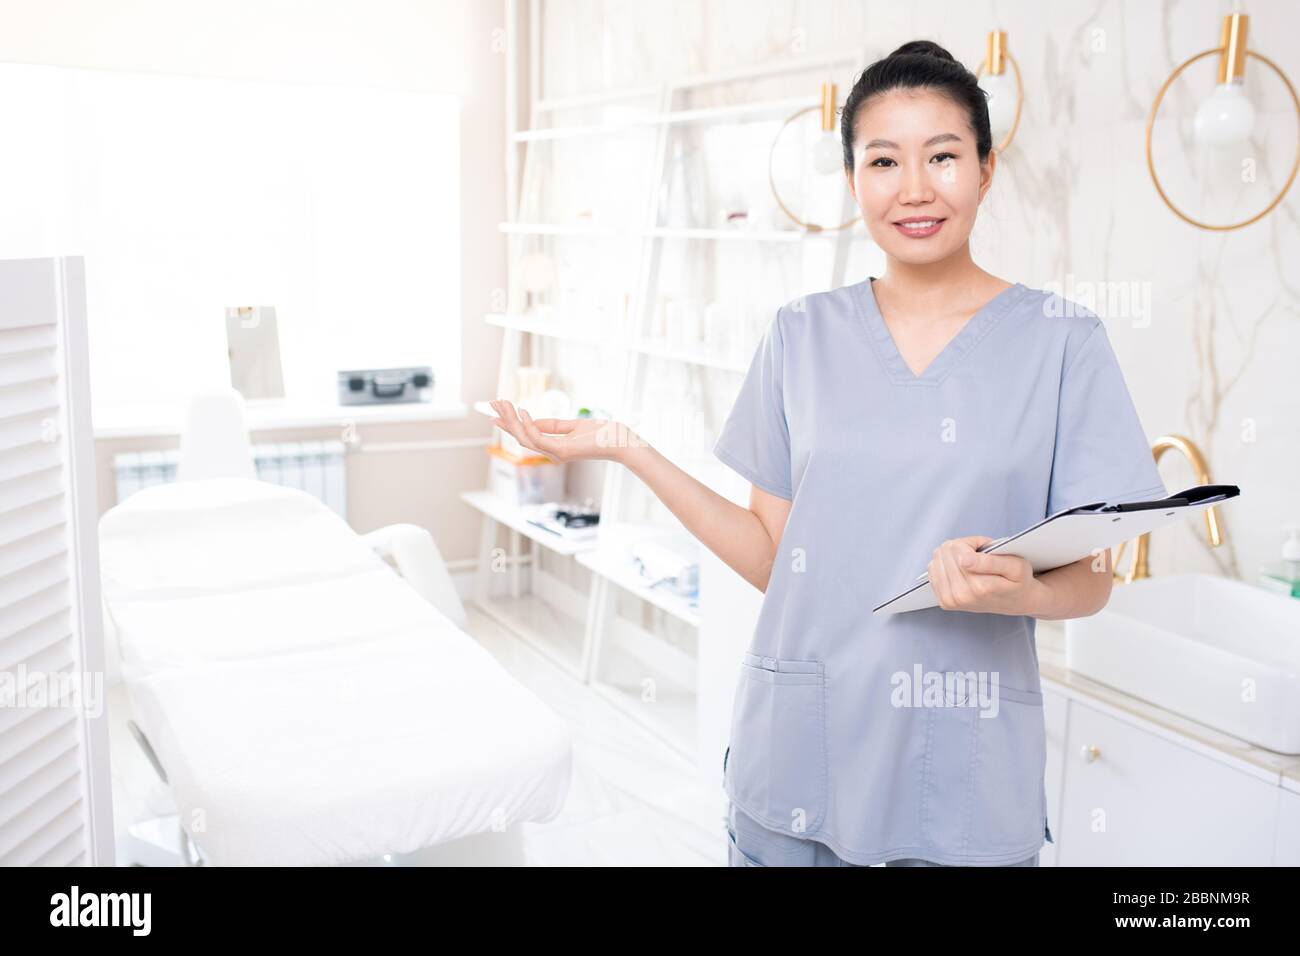 Portrait des lächelnden asiatischen Kosmetologen in den mit Zwischenablage stehenden Schruben und lädt Sie ein, Hautpflegeverfahren durchzuführen Stockfoto